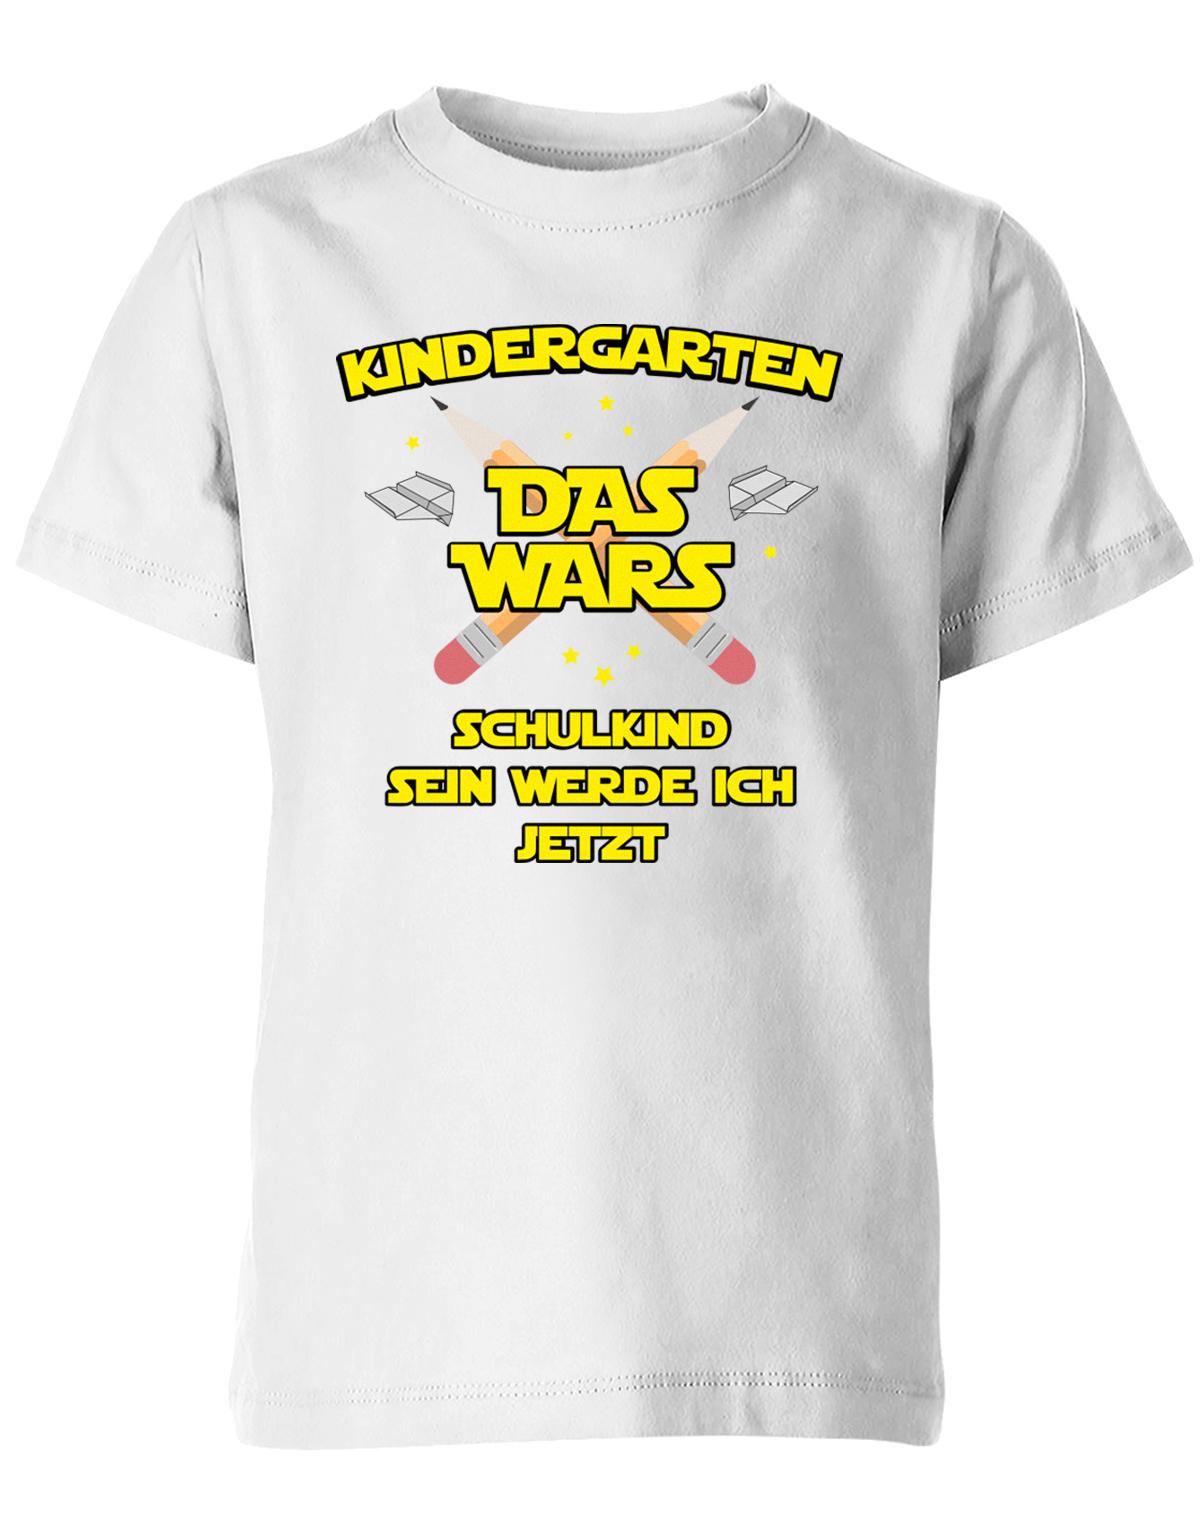 Kindergarten Das Wars Schulkind sein werde ich jetzt - Kita Abgänger Shirt Weiss